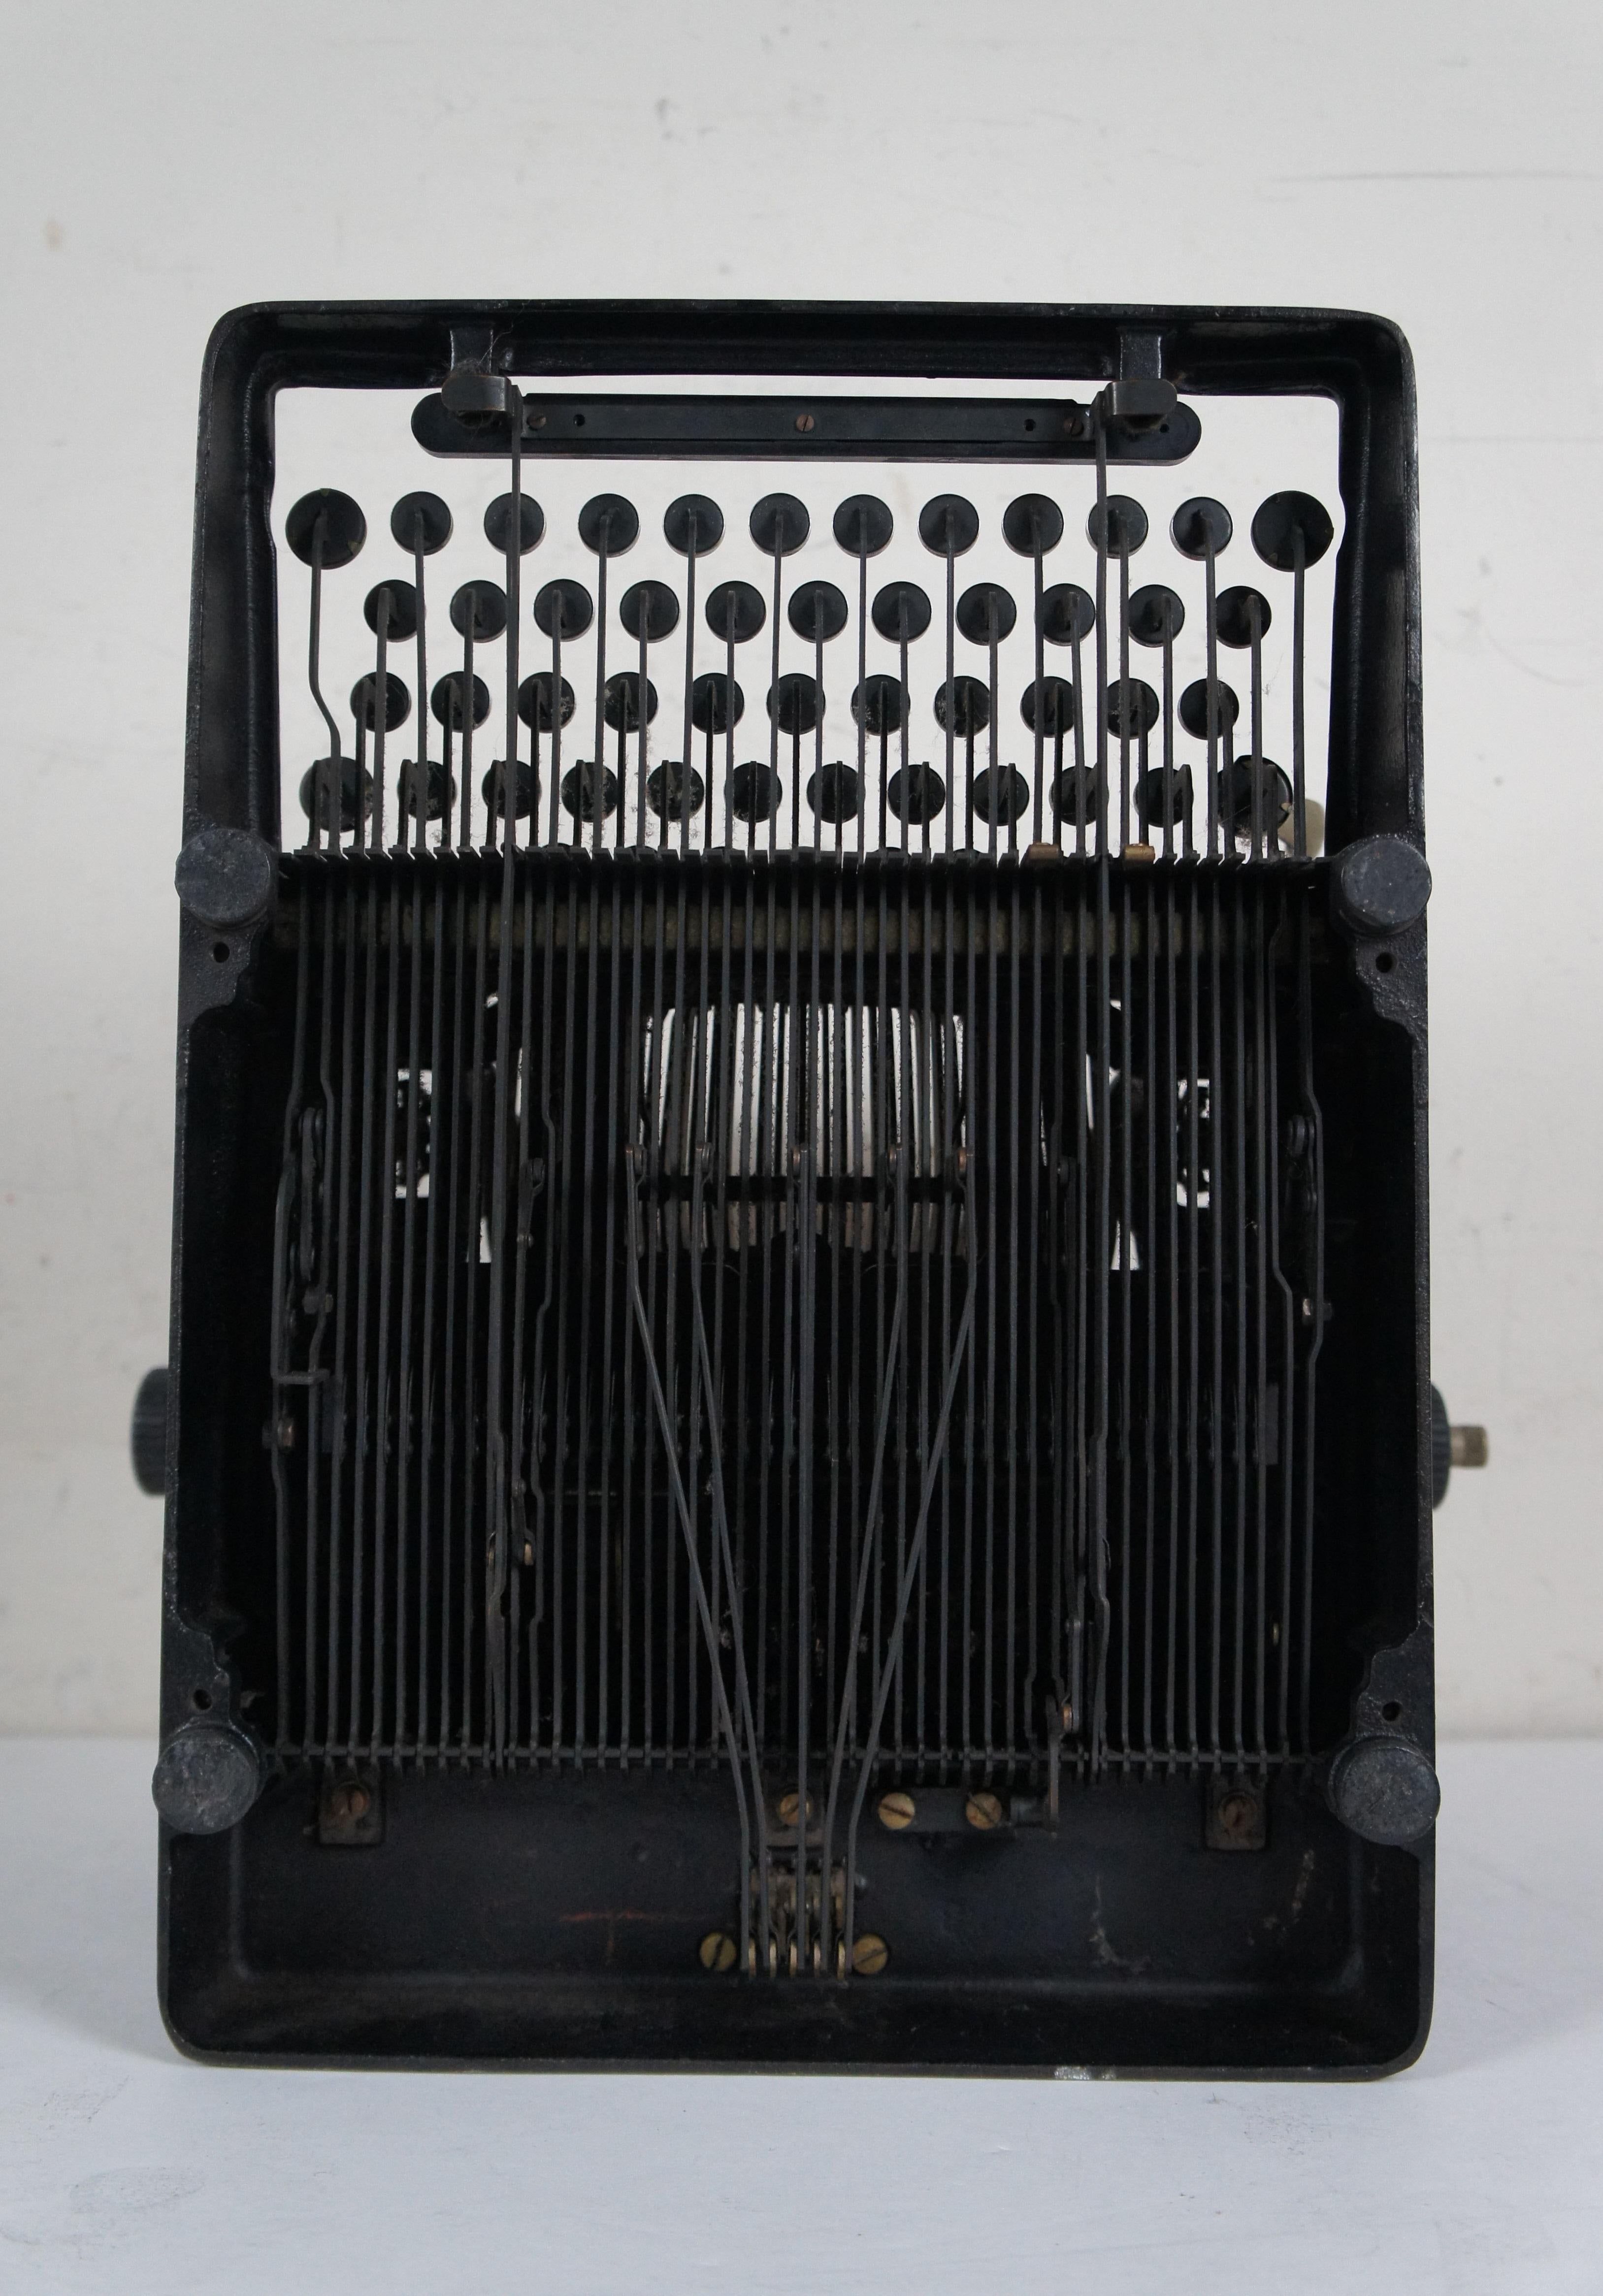 Antike 1930 LC Smith & Corona Standard & Silent No 8 Schreibmaschine 15